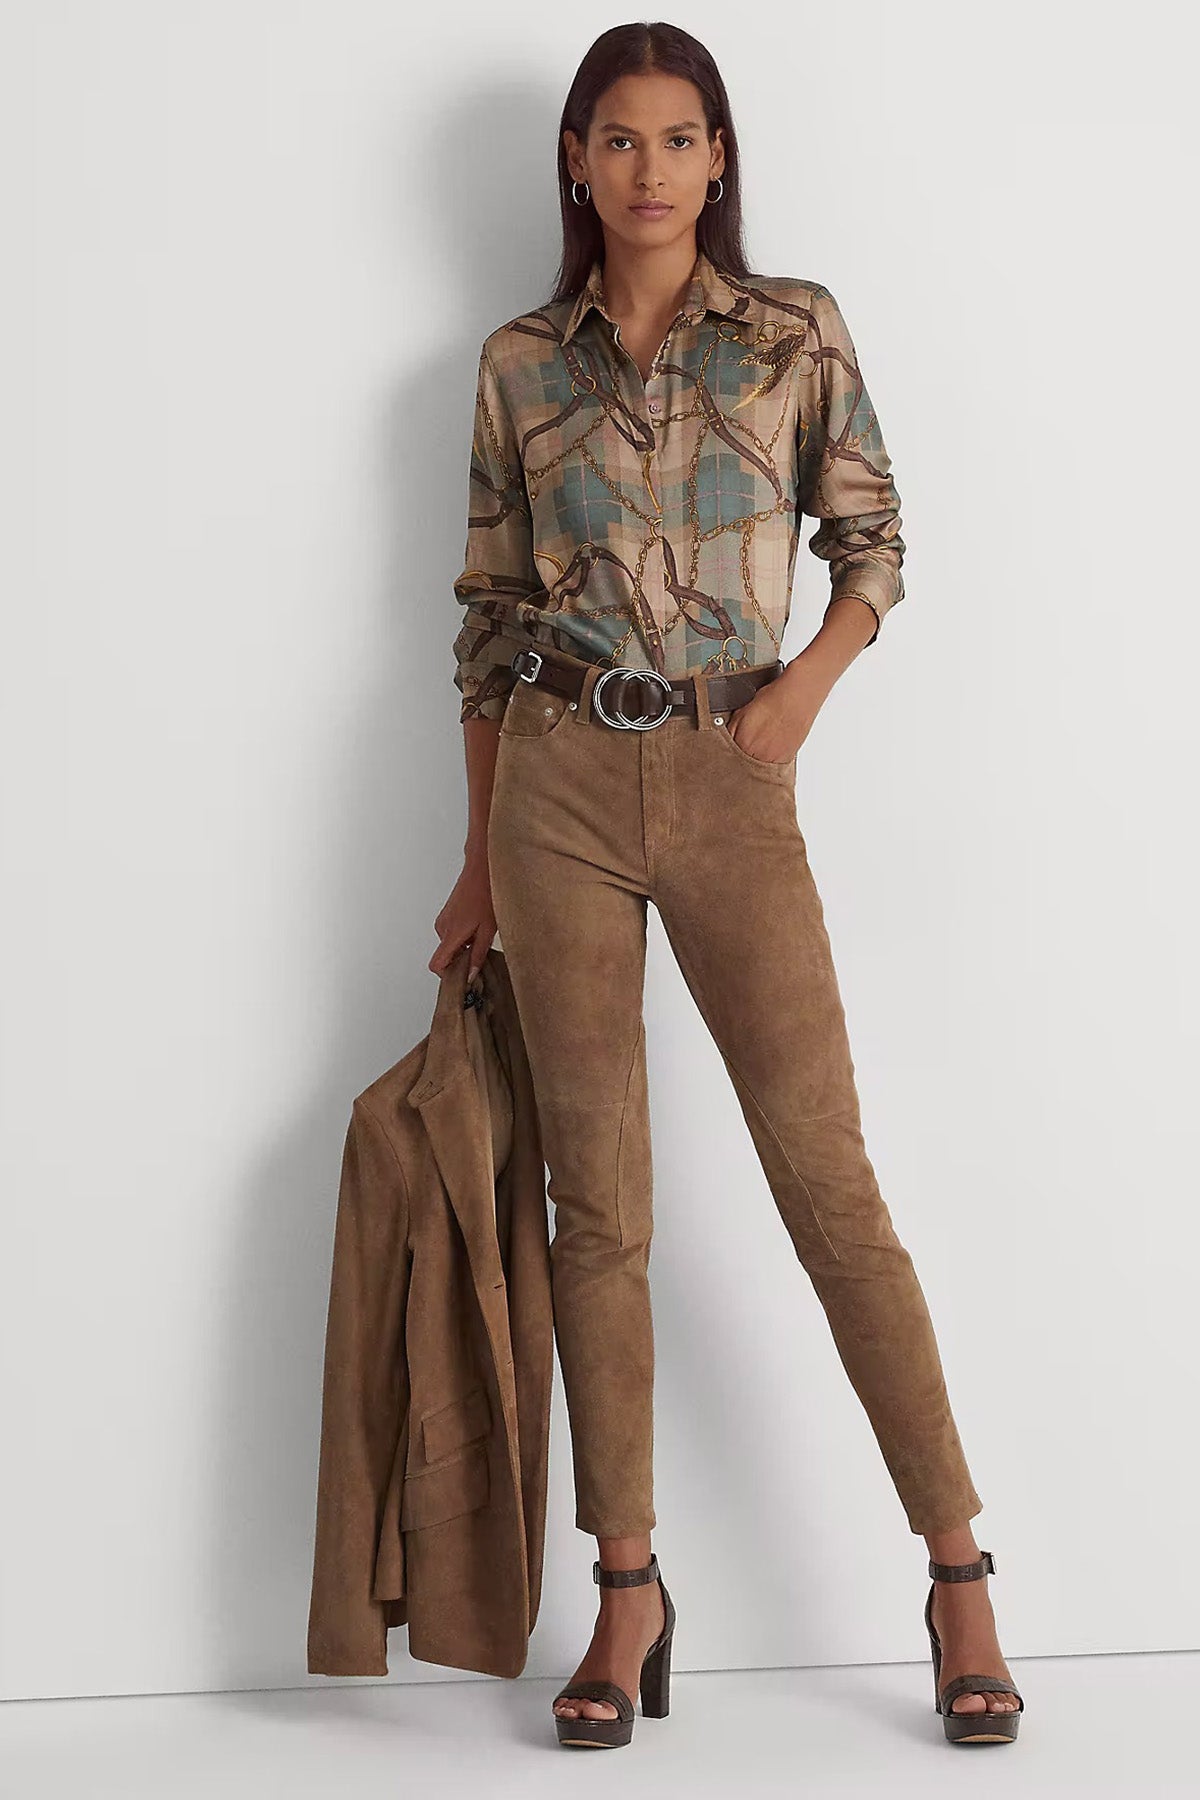 Polo Ralph Lauren Ekose Binici Temalı Gömlek-Libas Trendy Fashion Store